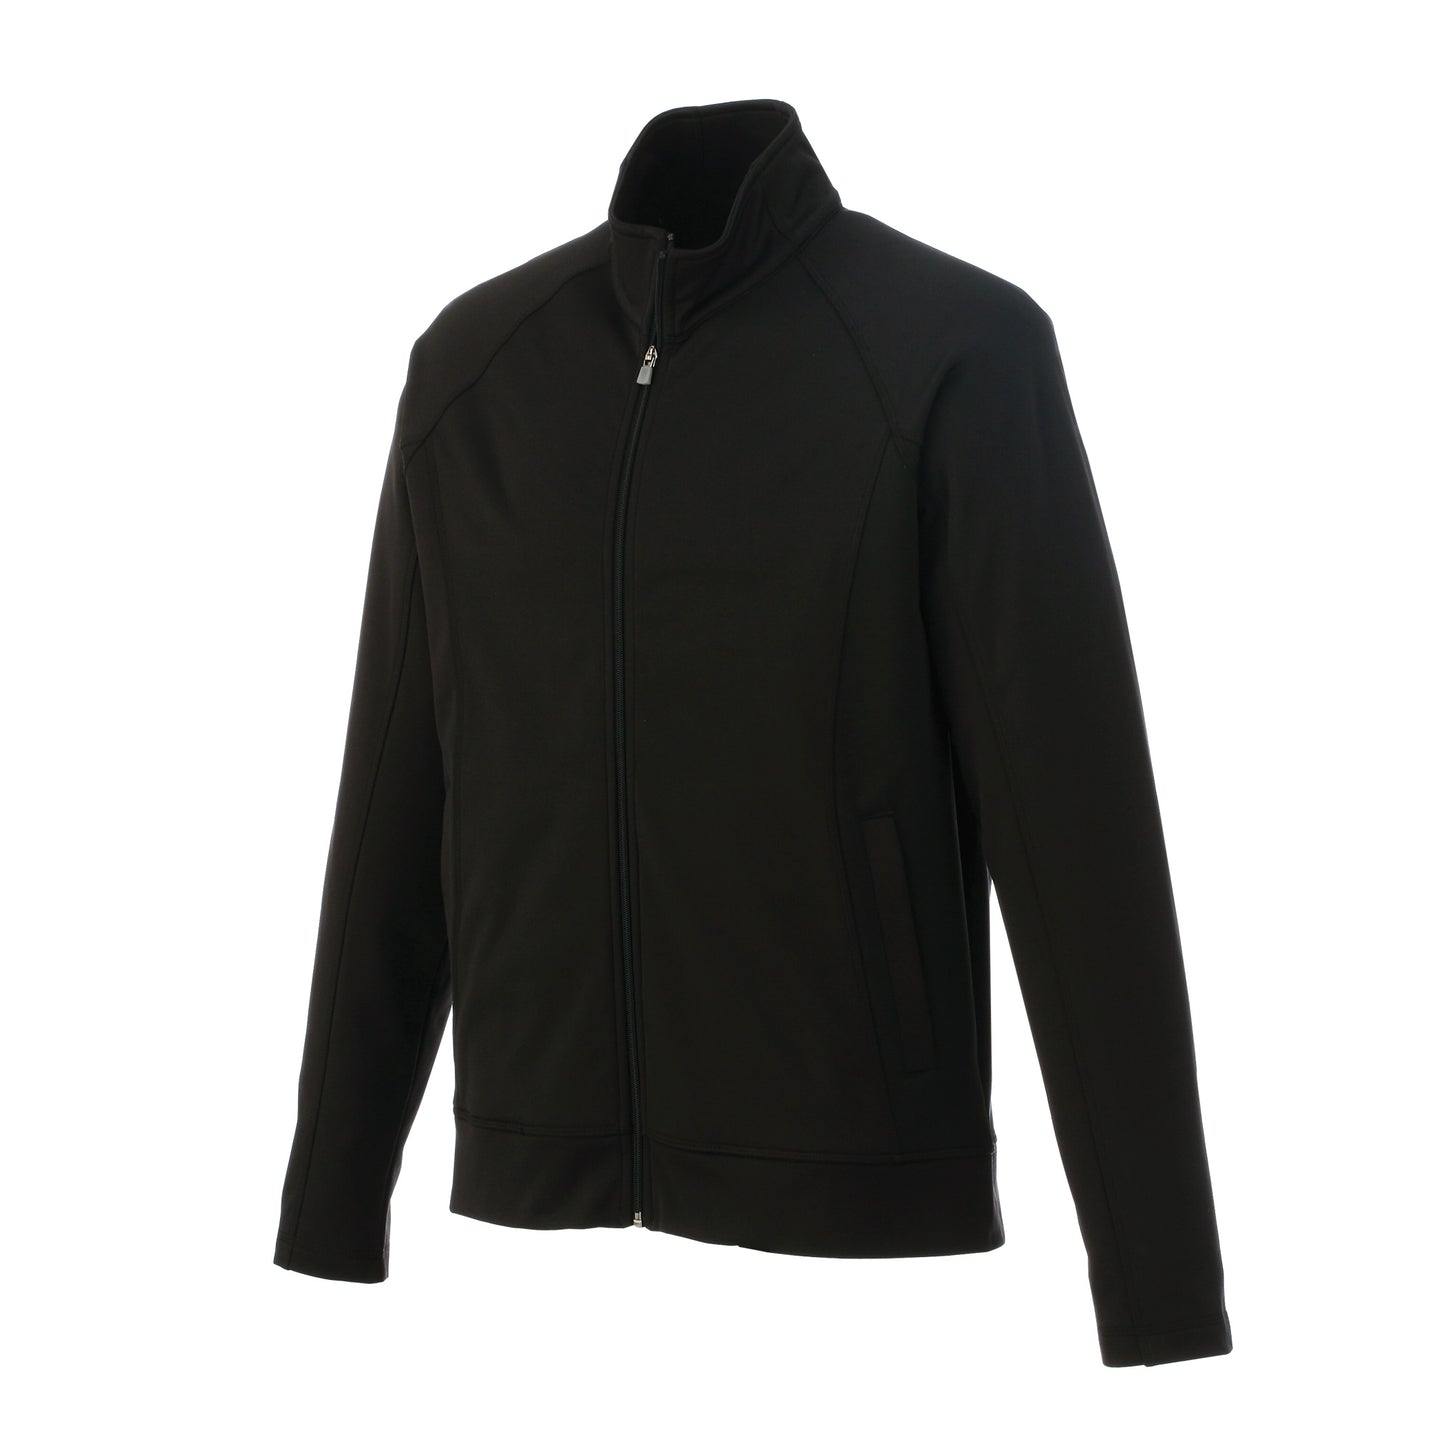 Veste de travail 100 % tricot de jersey pour homme Uniformes Sélect #18117 noir